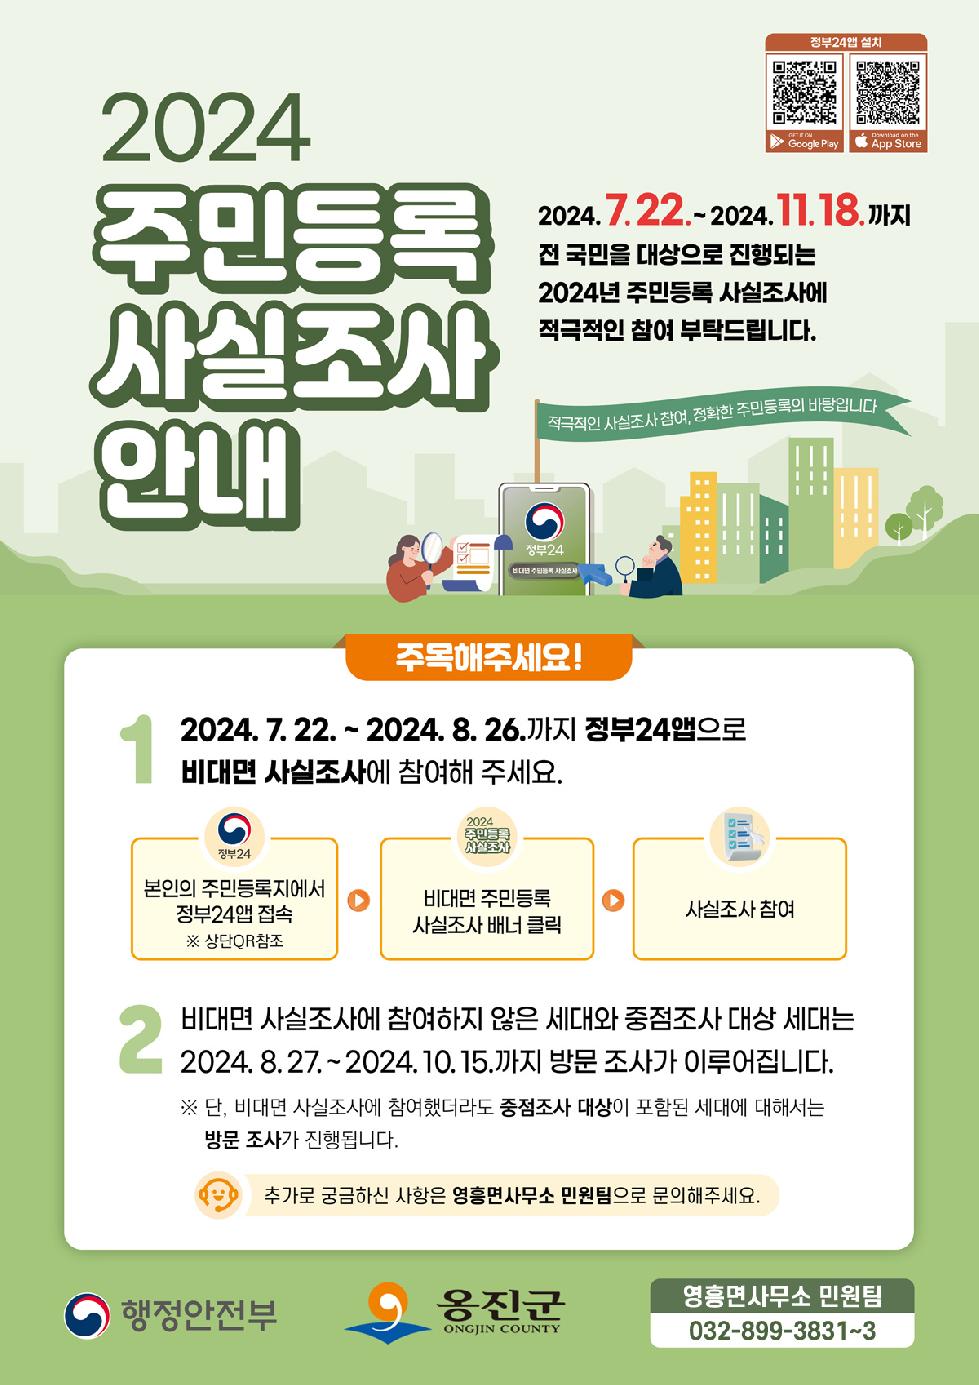 인천 옹진군 영흥면, 2024년 주민등록 사실조사 실시